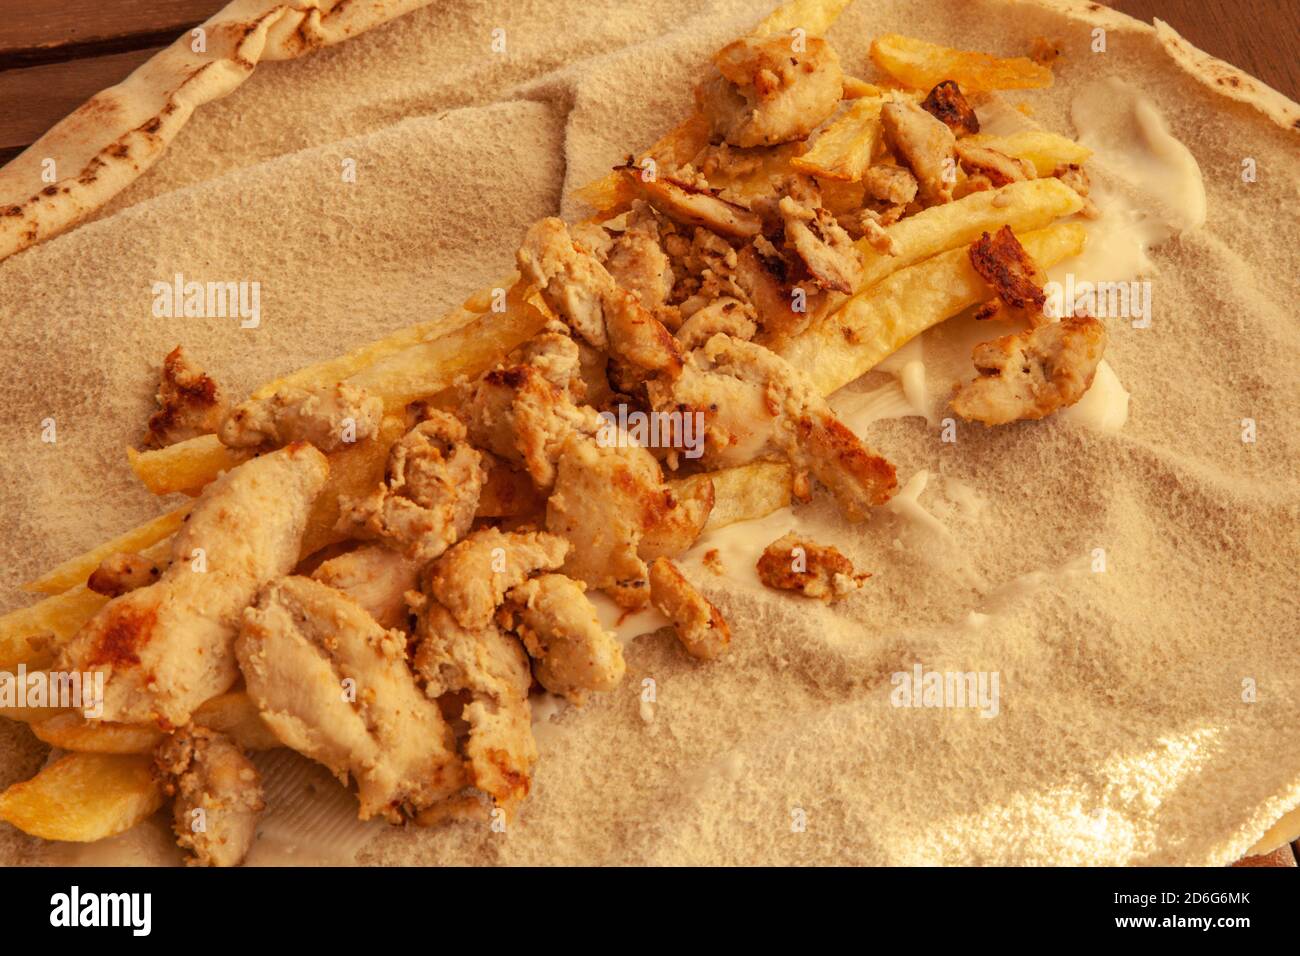 Préparation du sandwich Shawarma au poulet maison avec du pain arabe libanais Banque D'Images